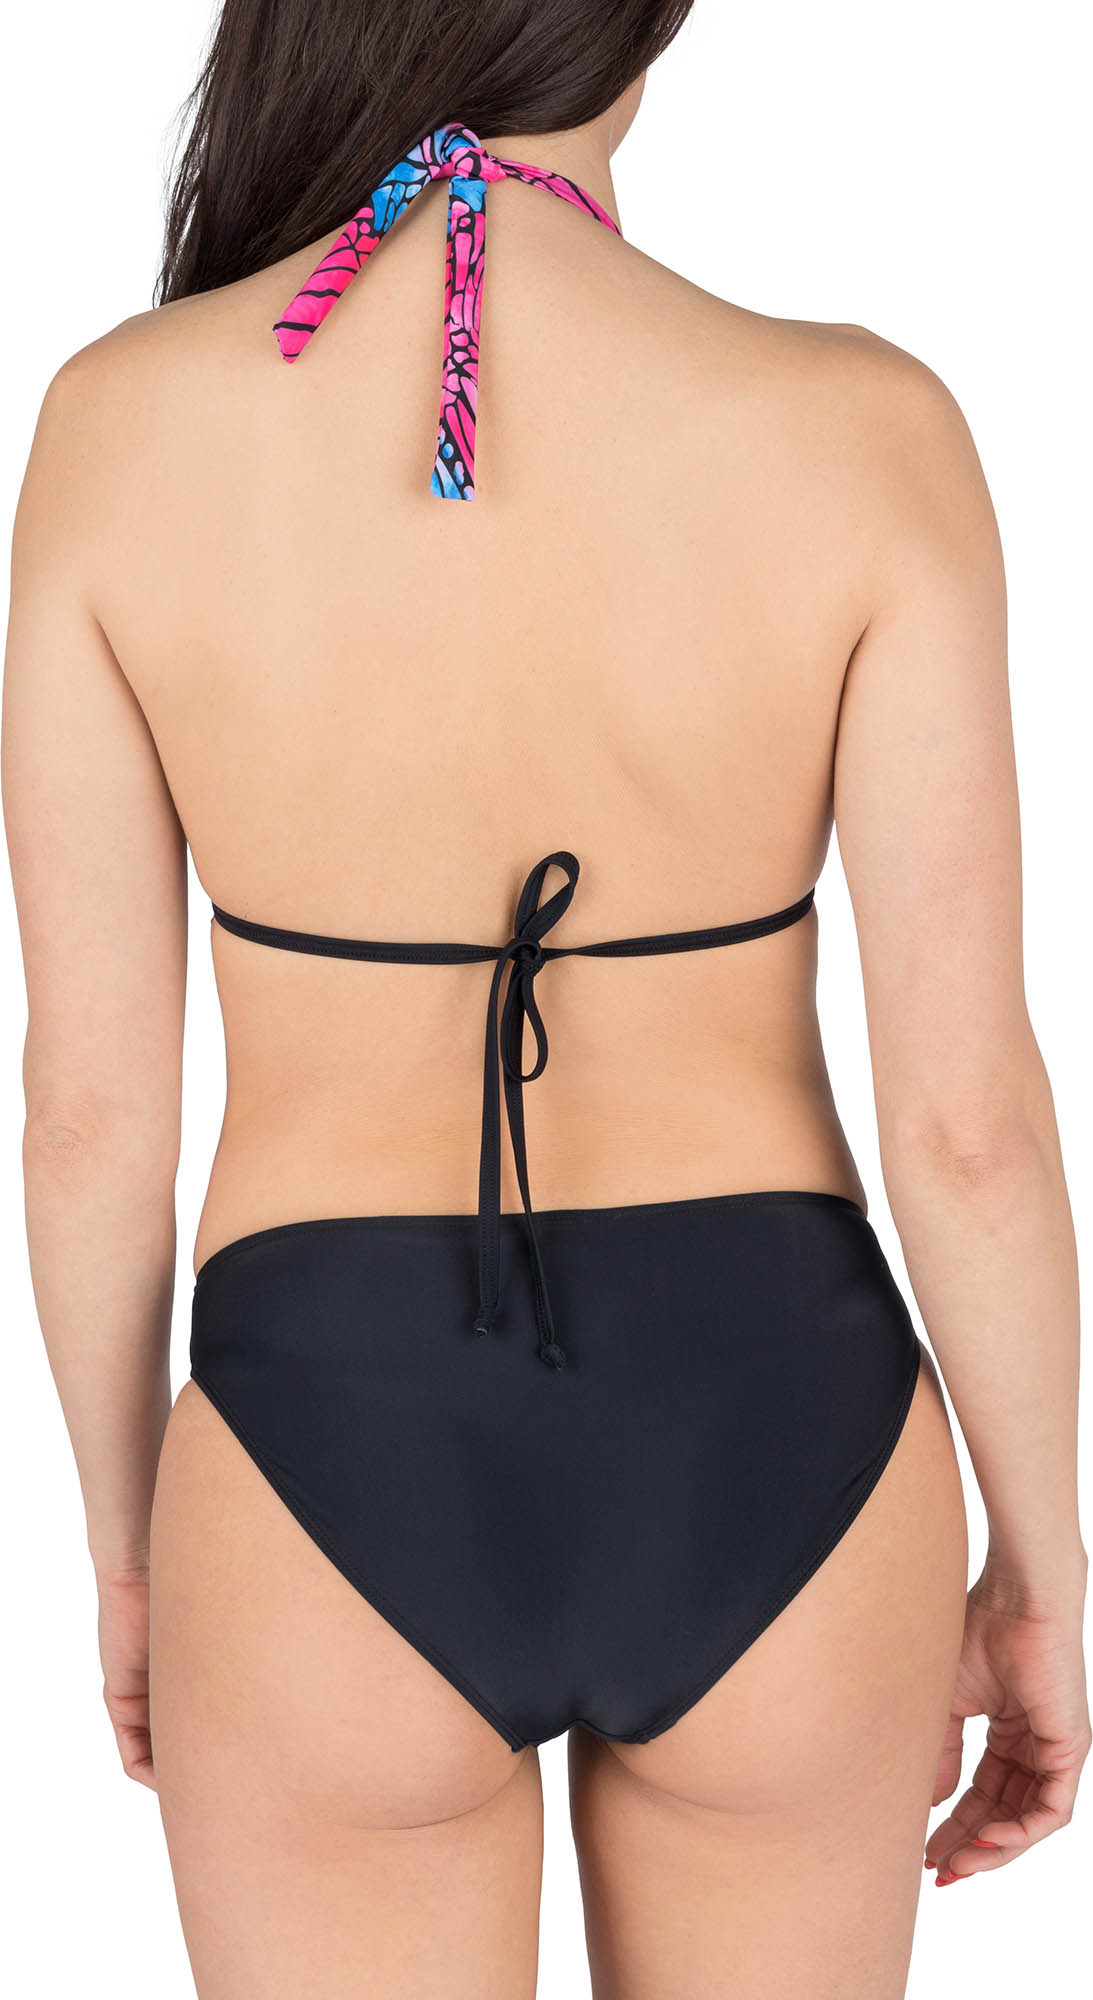 Women's two-piece swimsuit